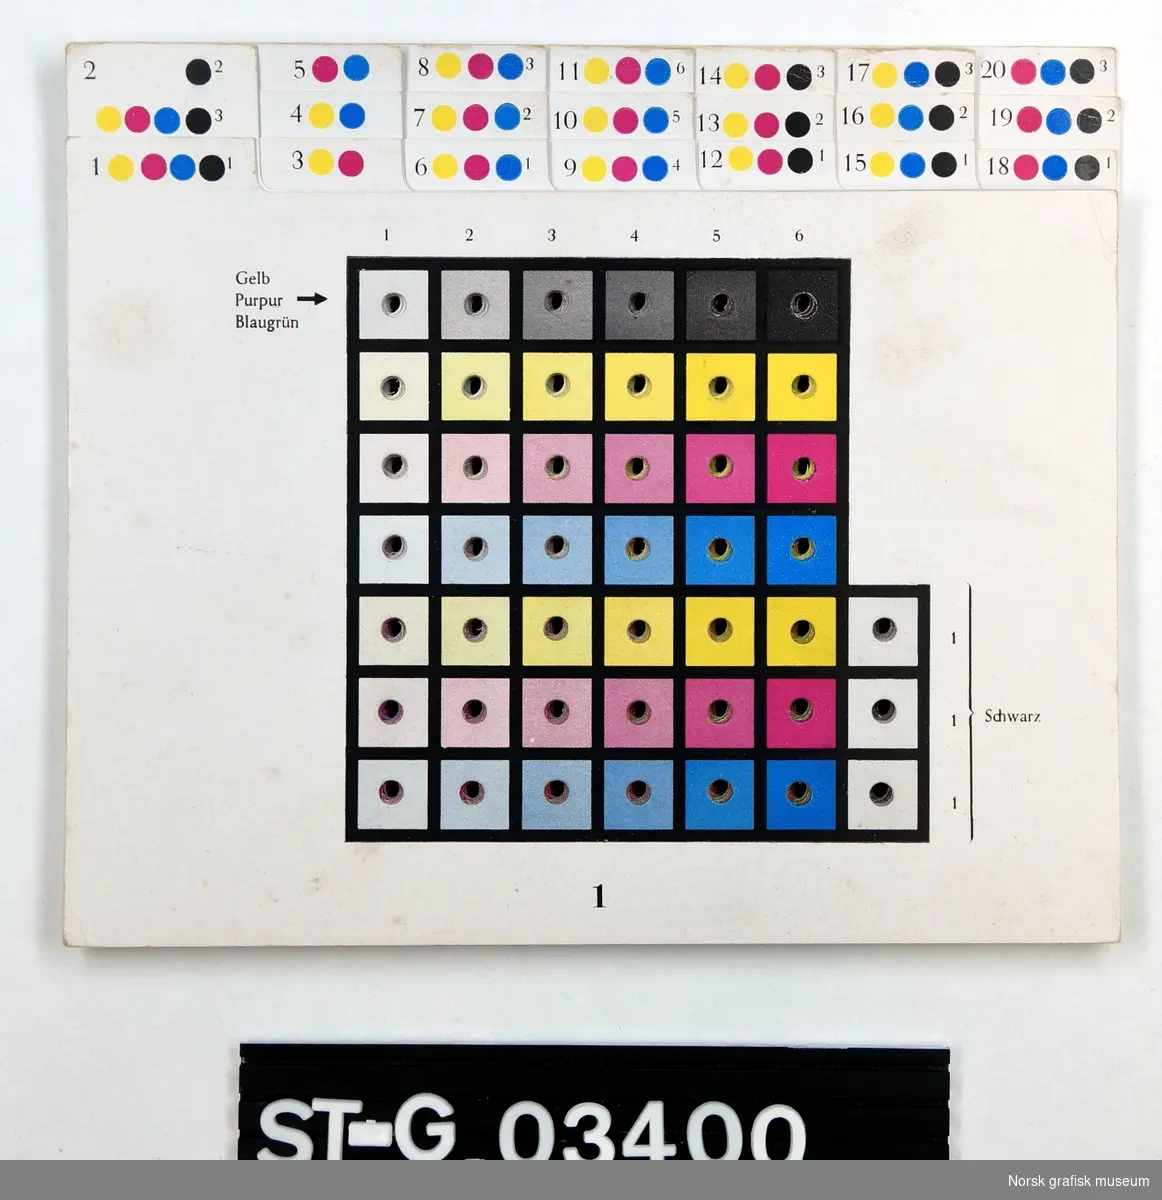 Et kartotek med fargekart, totalt 20 kort. Hvert kort er delt inn i ruter som viser viser ulike nyanser og blandinger av hvit, sort, magenta (rød), gul og cyan (blå), med en hull midt i fargeruten. Tekst på tysk.